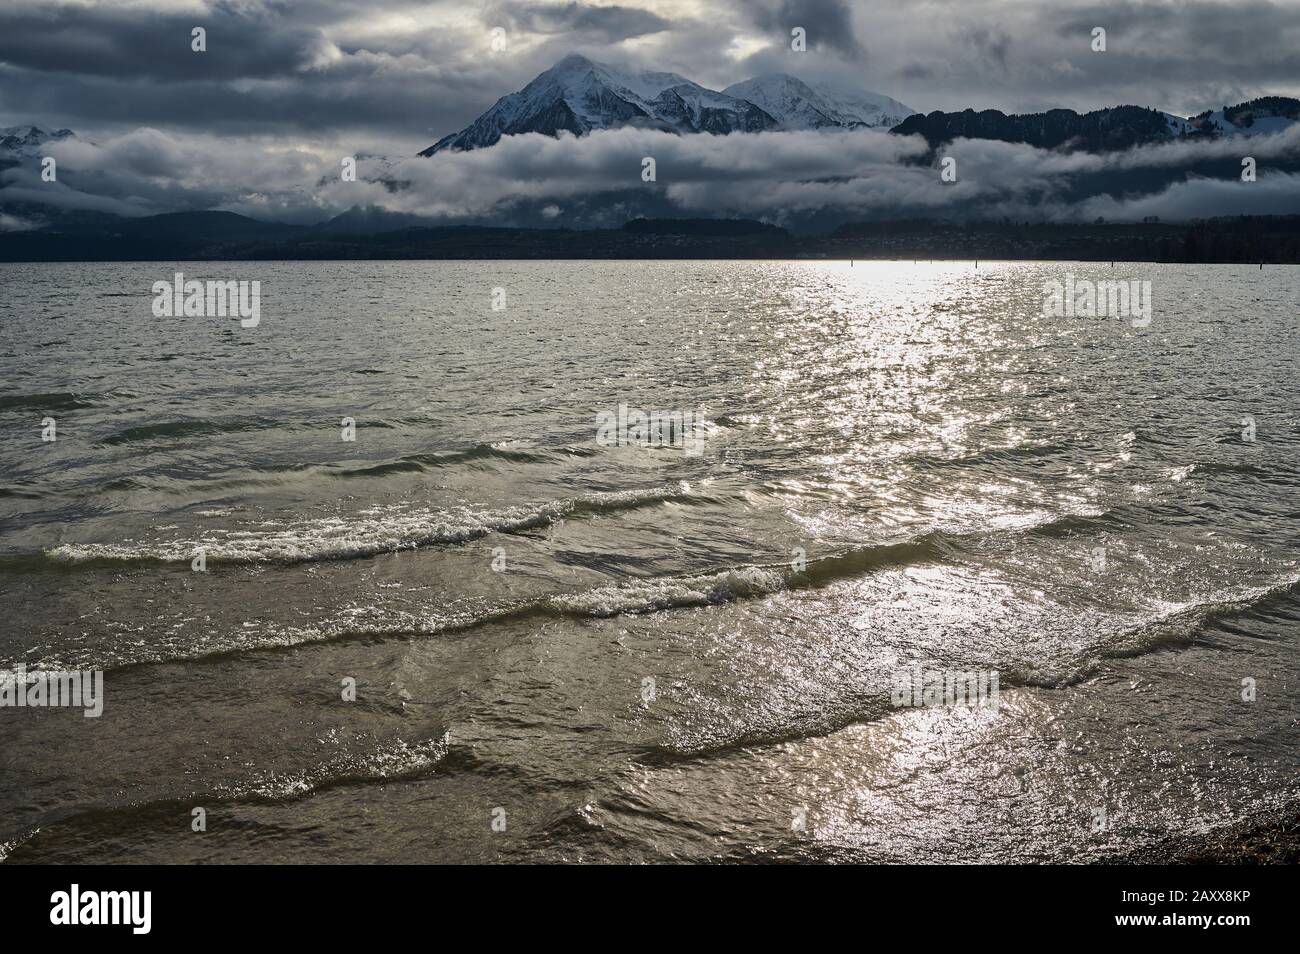 View over Lake Thun in Switzerland Stock Photo